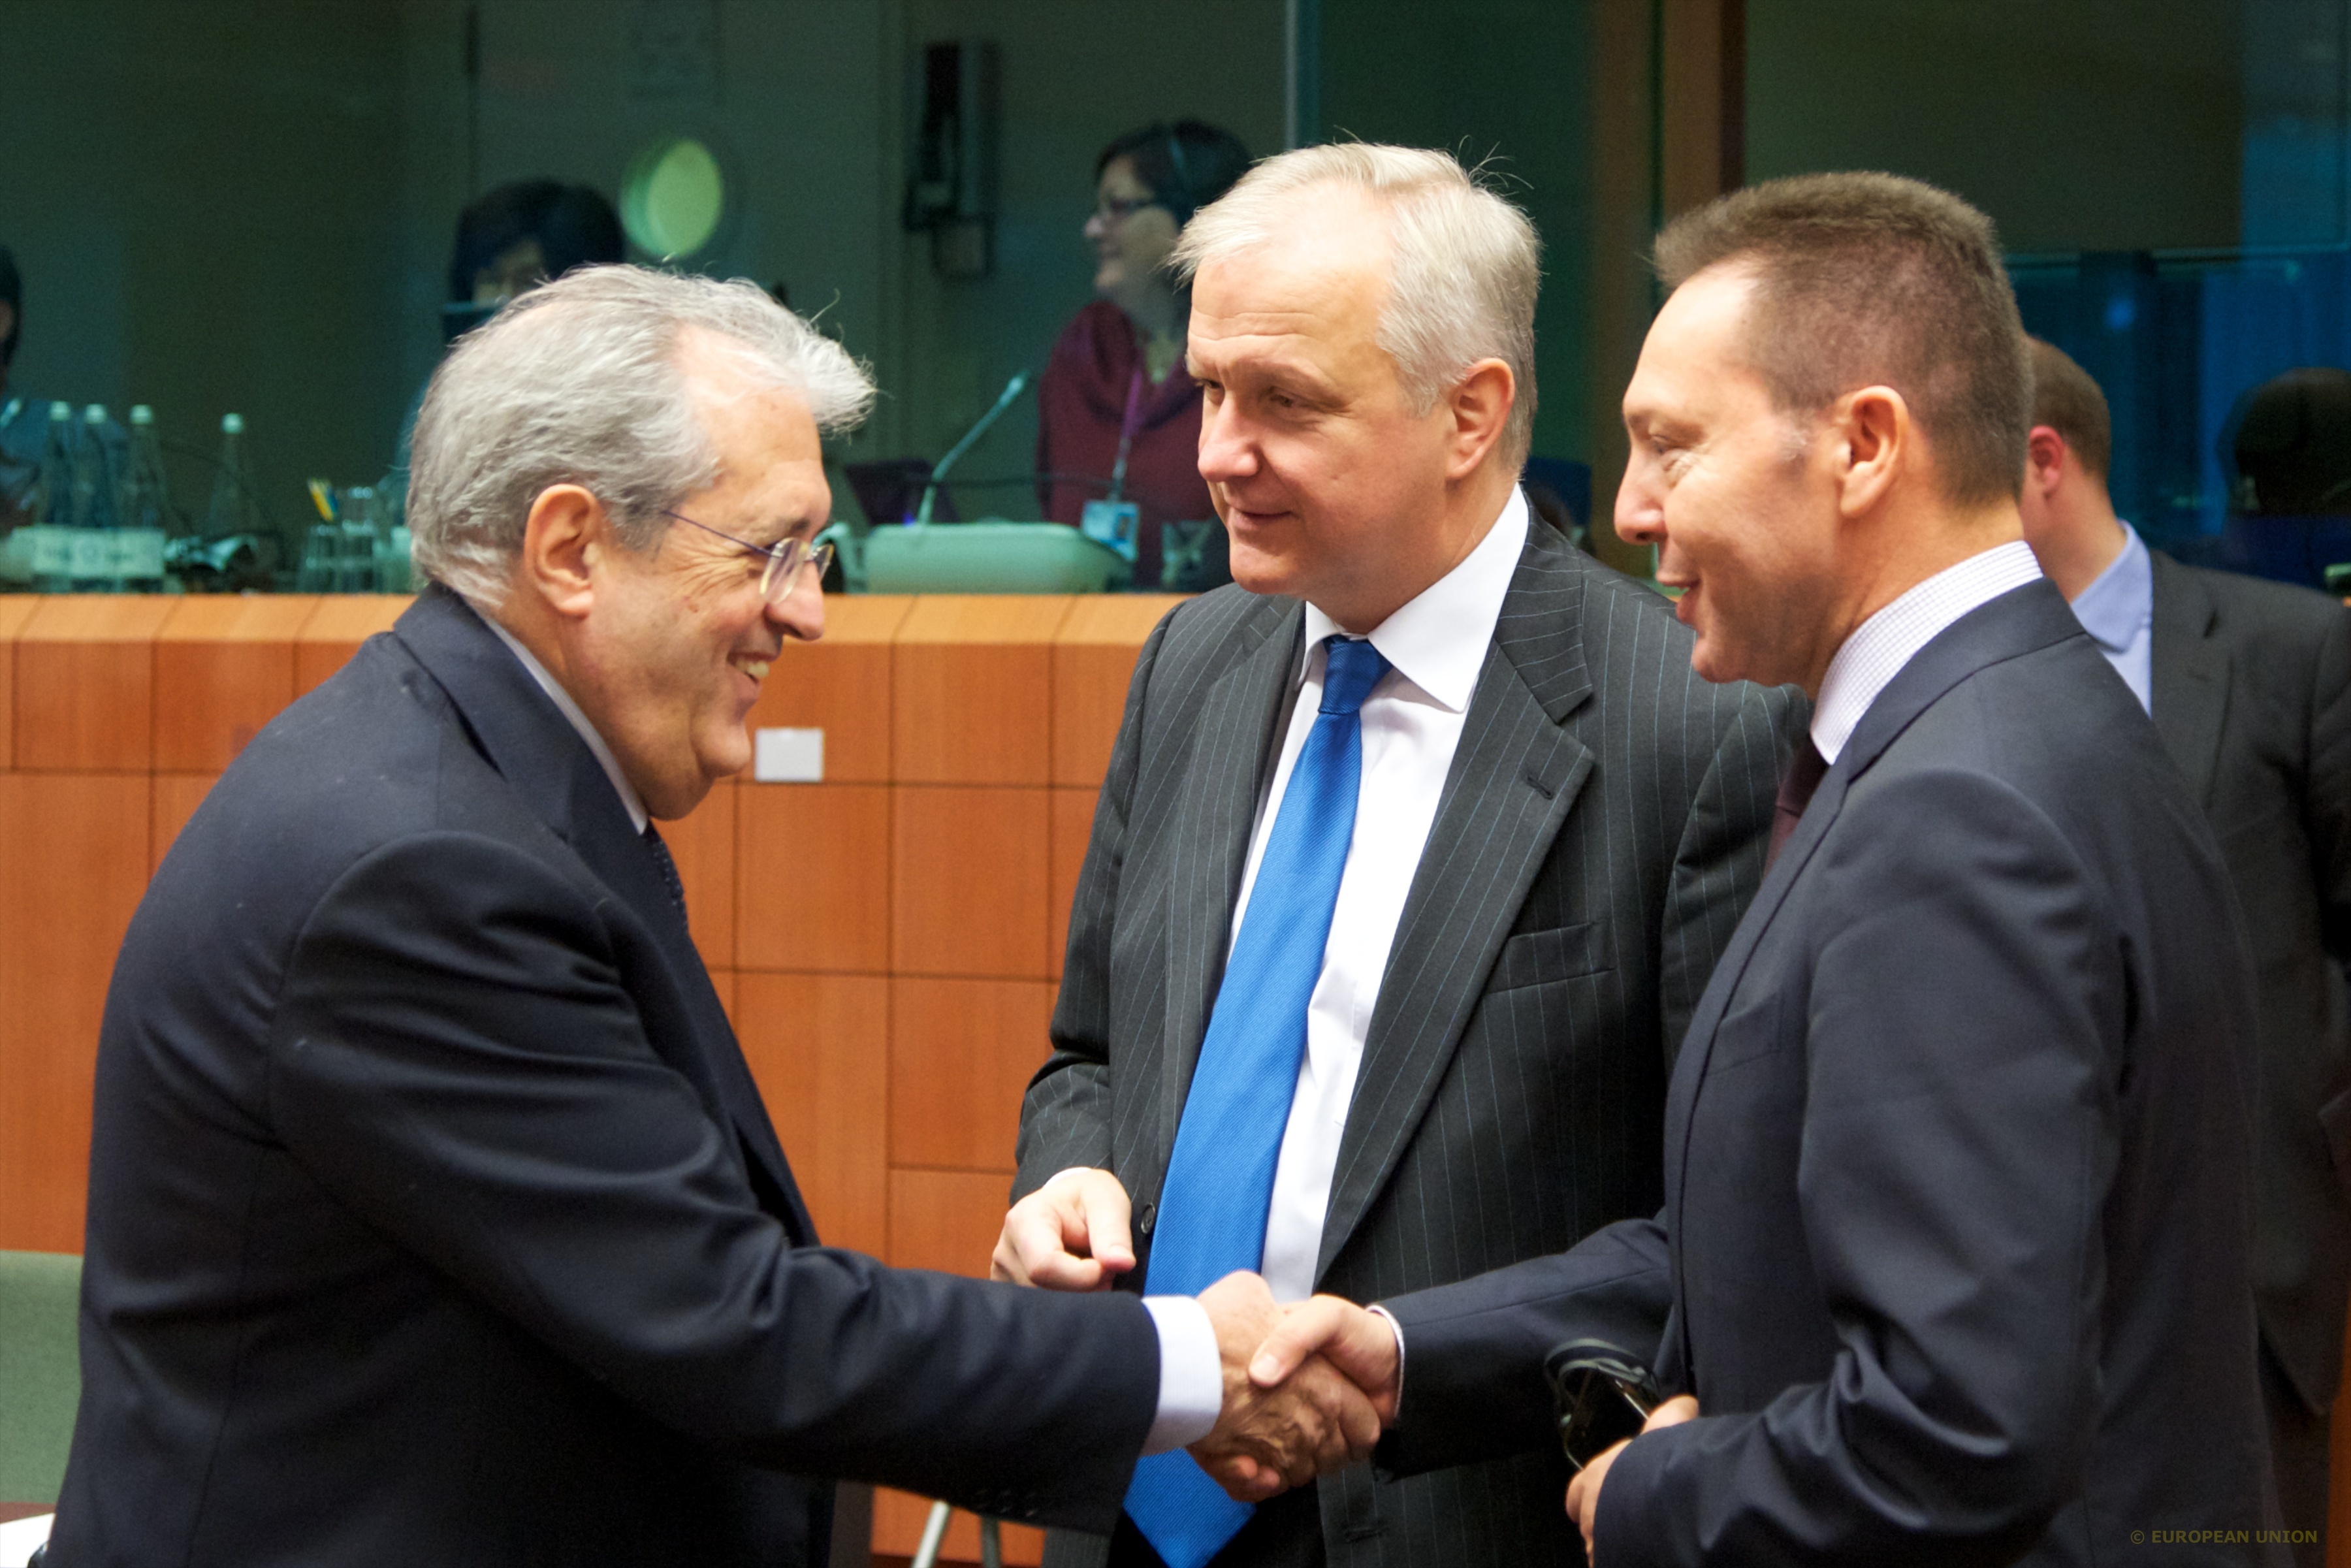 ΦΩΤΟ EUROKINISSI - Η συνεδρίαση του Eurogroup